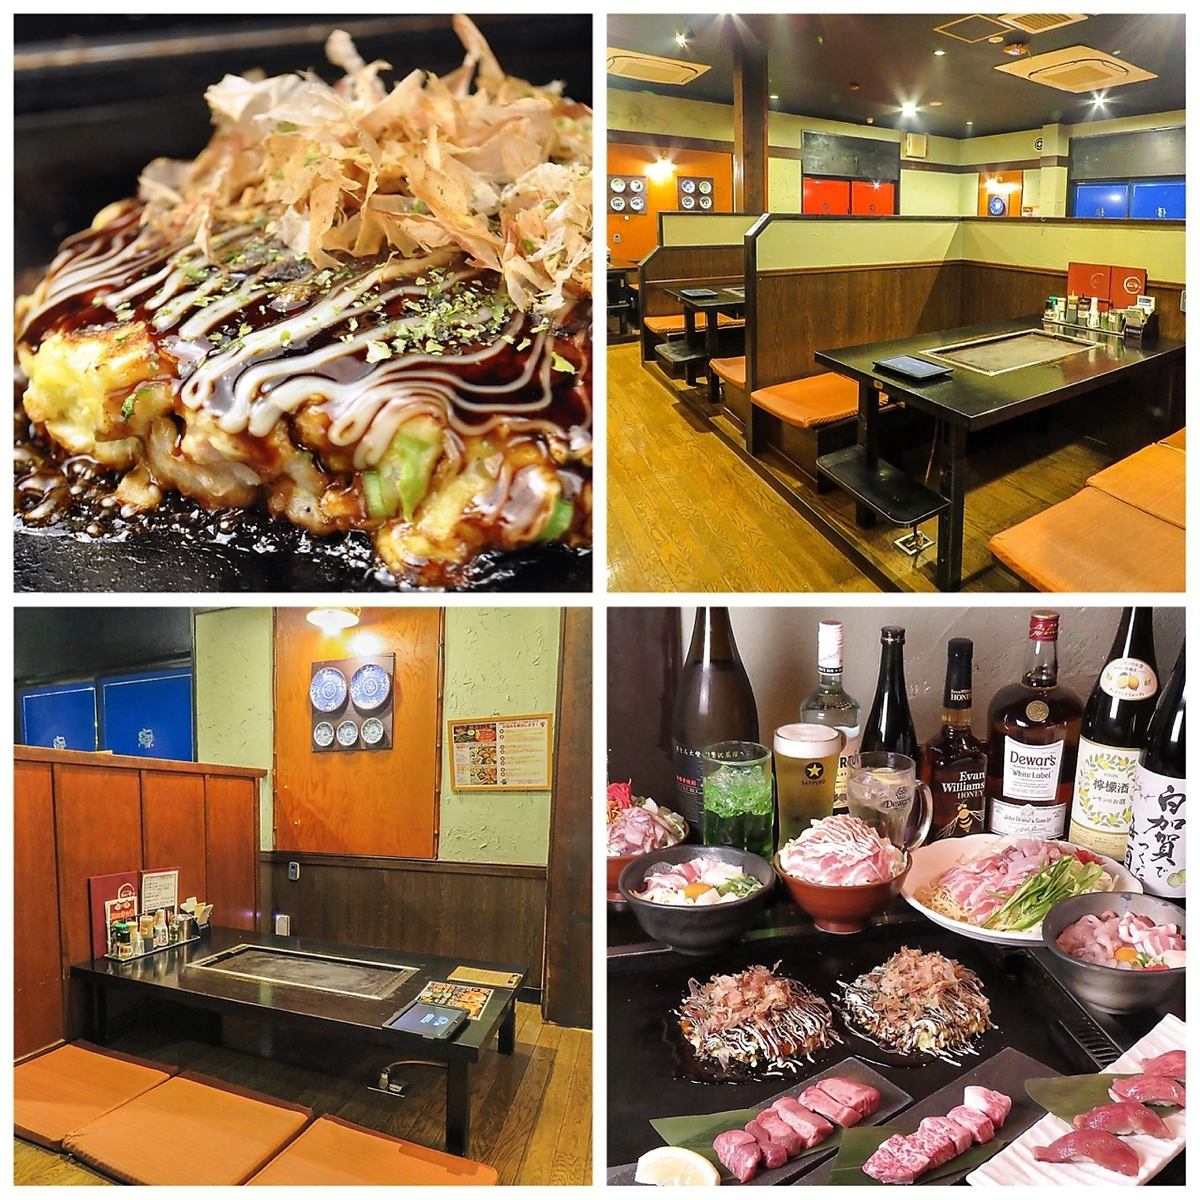 ◆如果您吃美味的okonomiyaki和monja，就在這裡◆從小團體到大型宴會◎